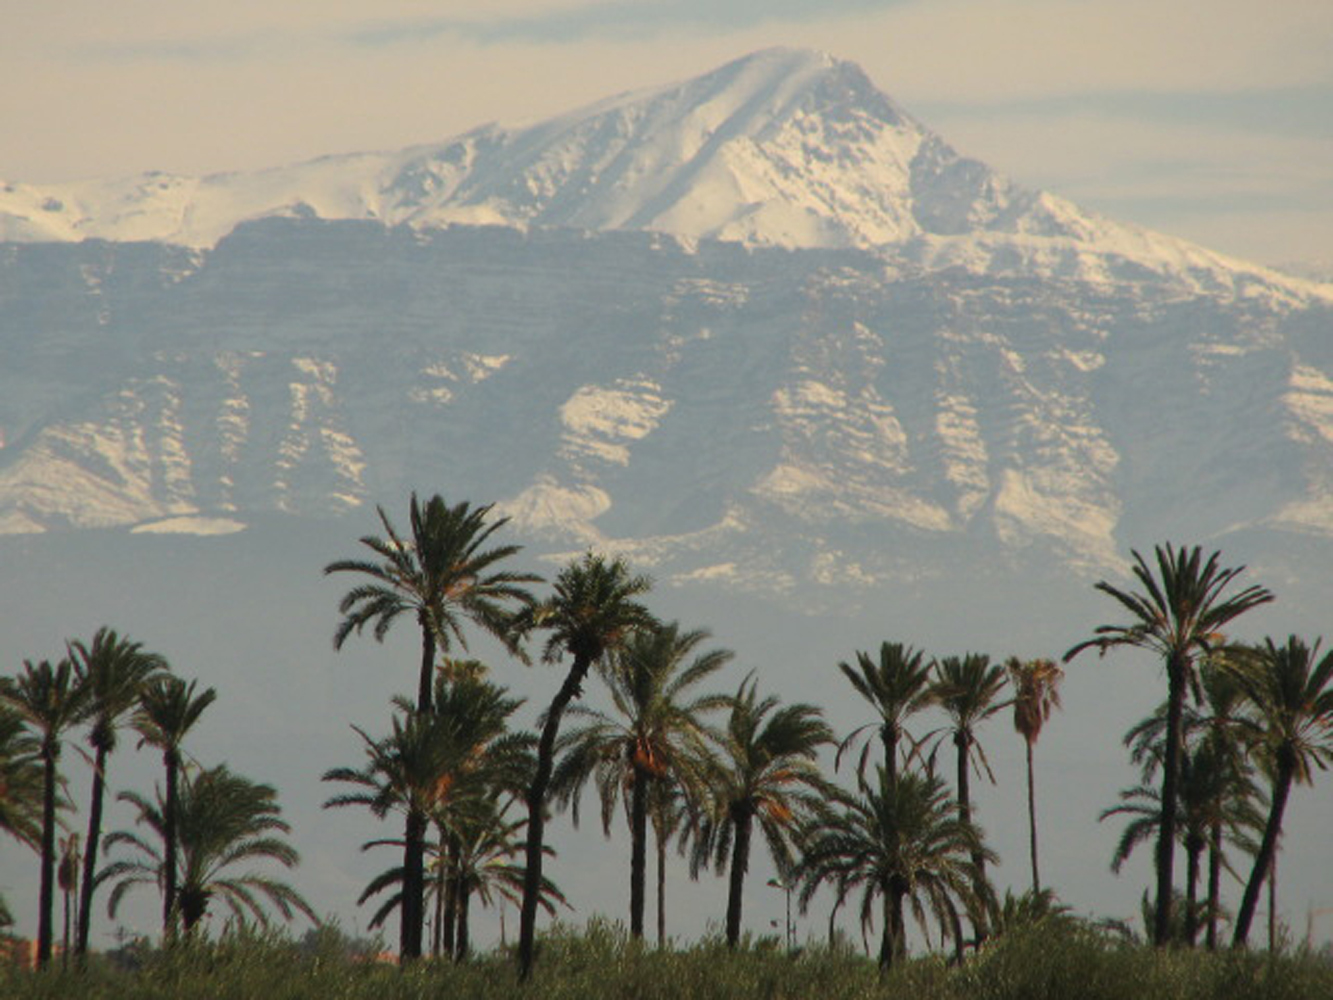 Moroccan landscape photo